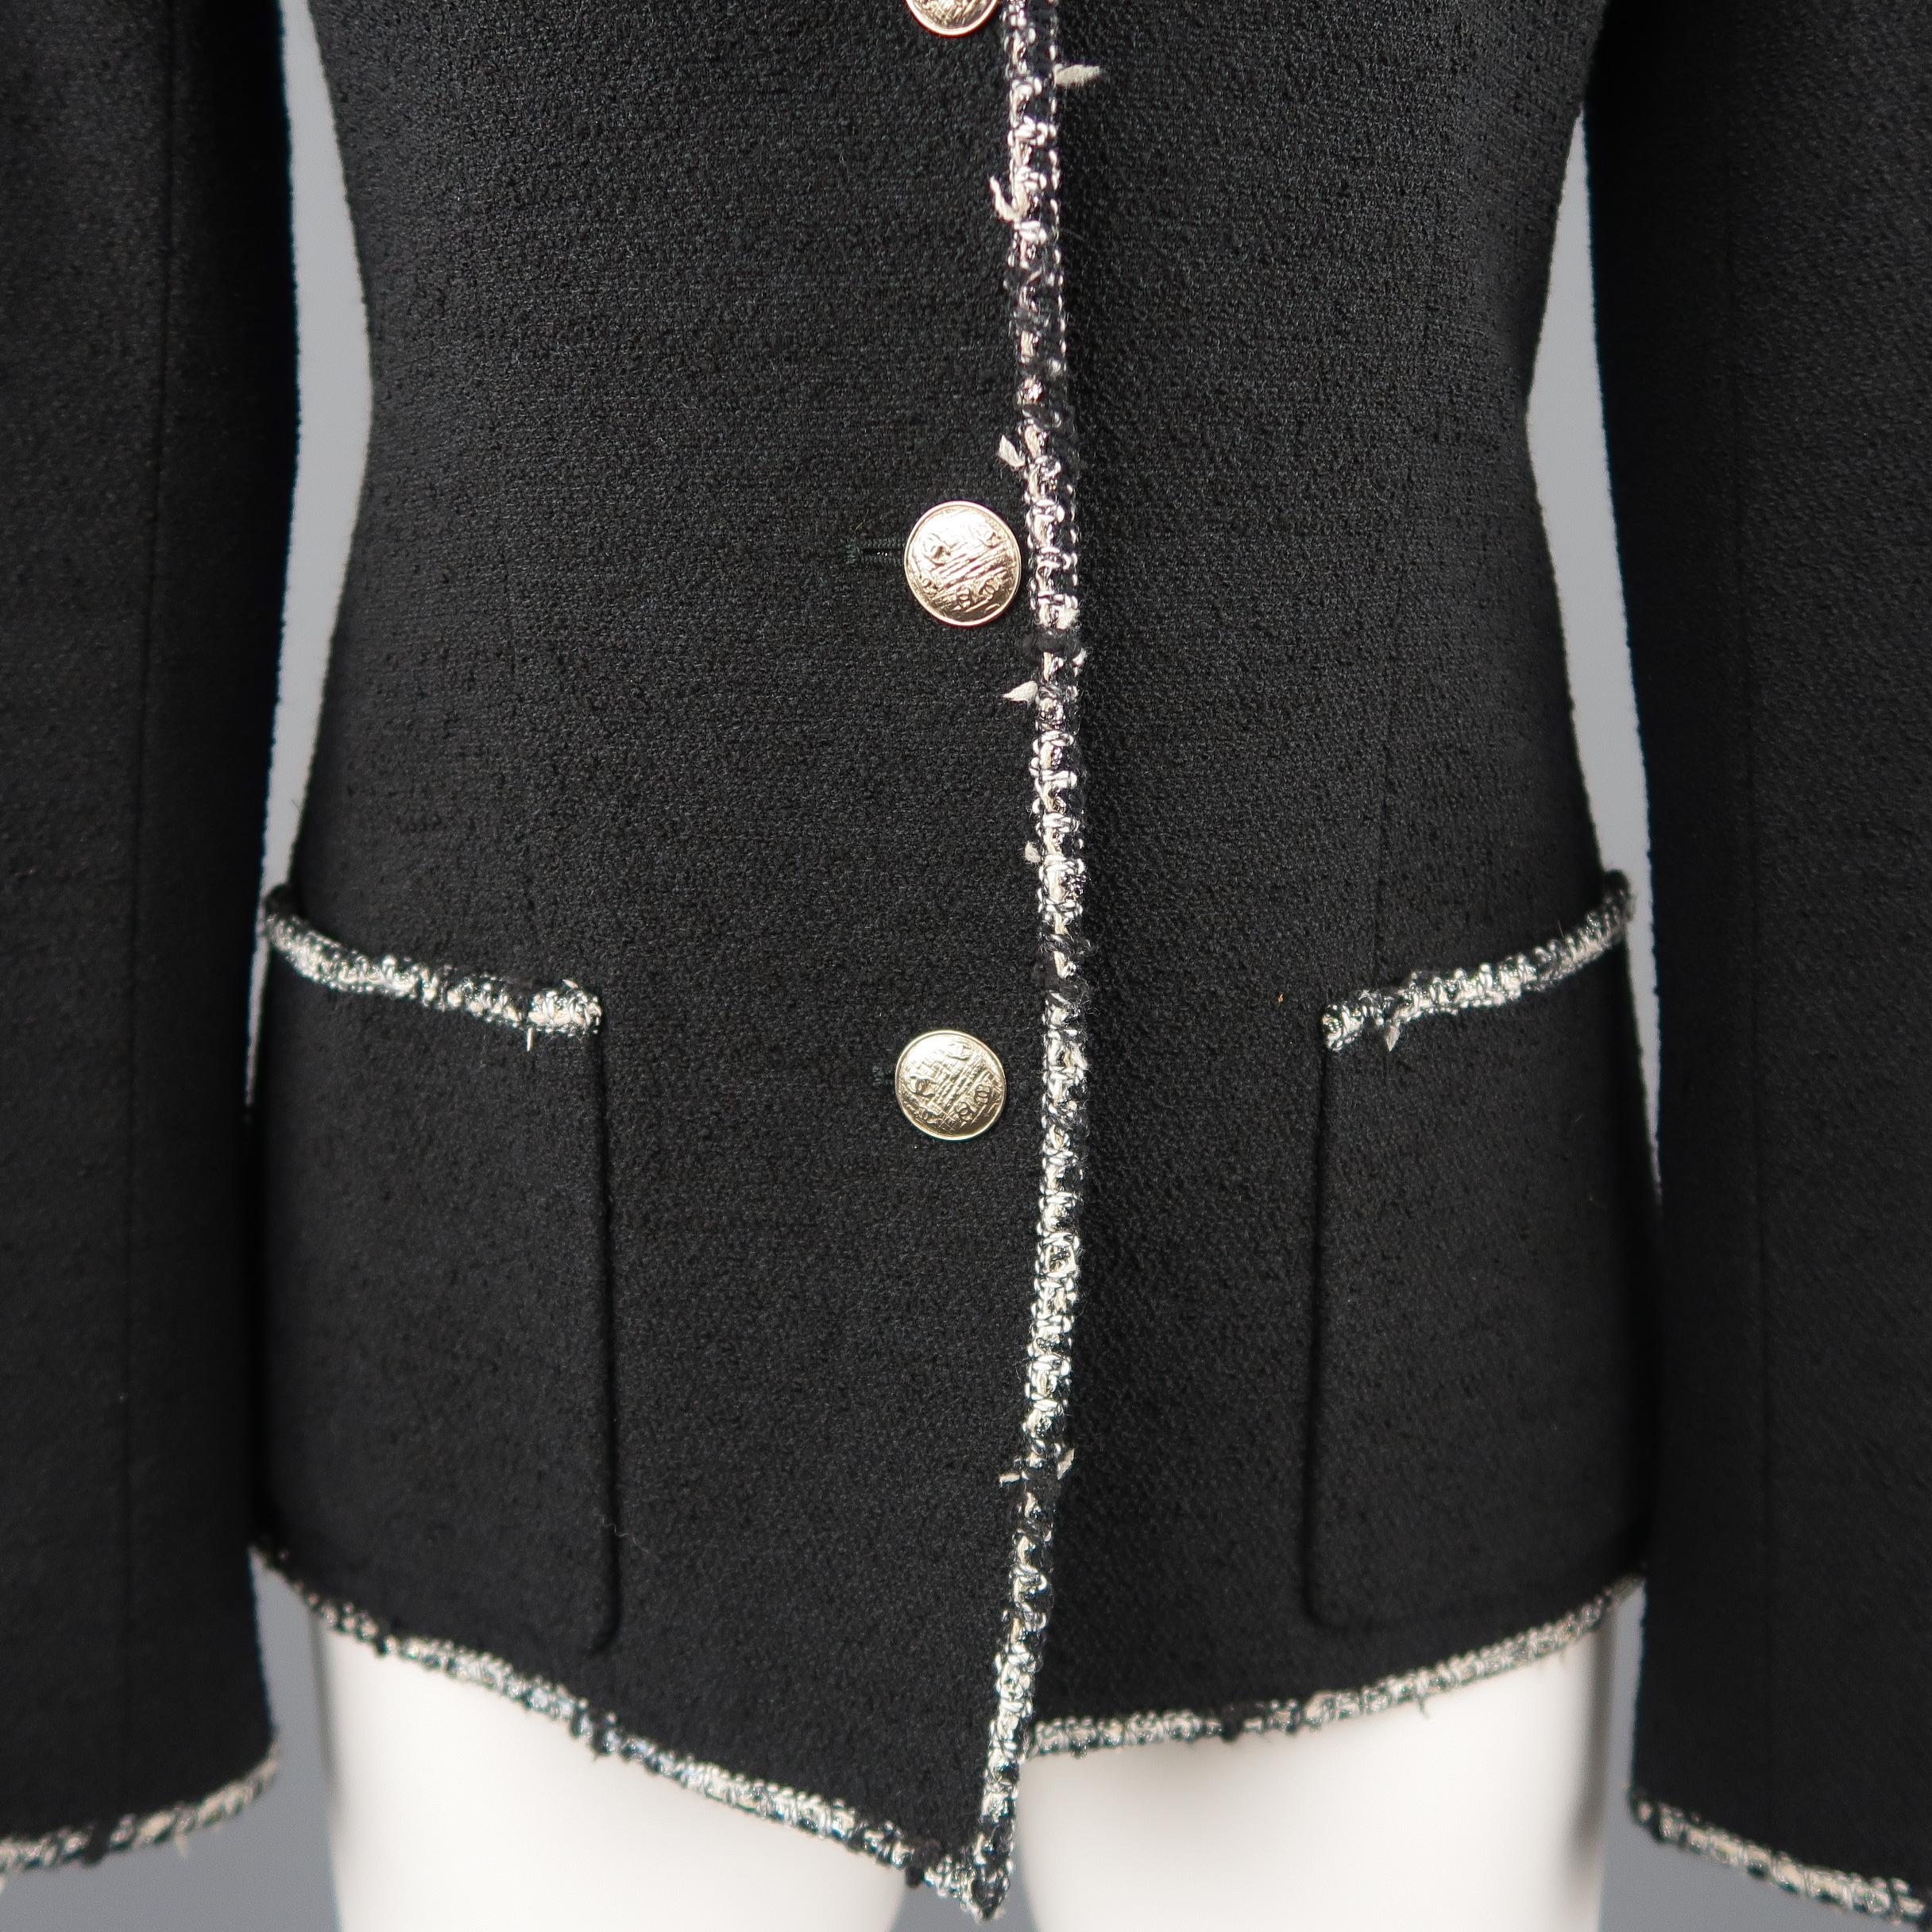 Women's CHANEL Size 6 Black Wool Blend Boucle Trim No. 5 Blazer Jacket